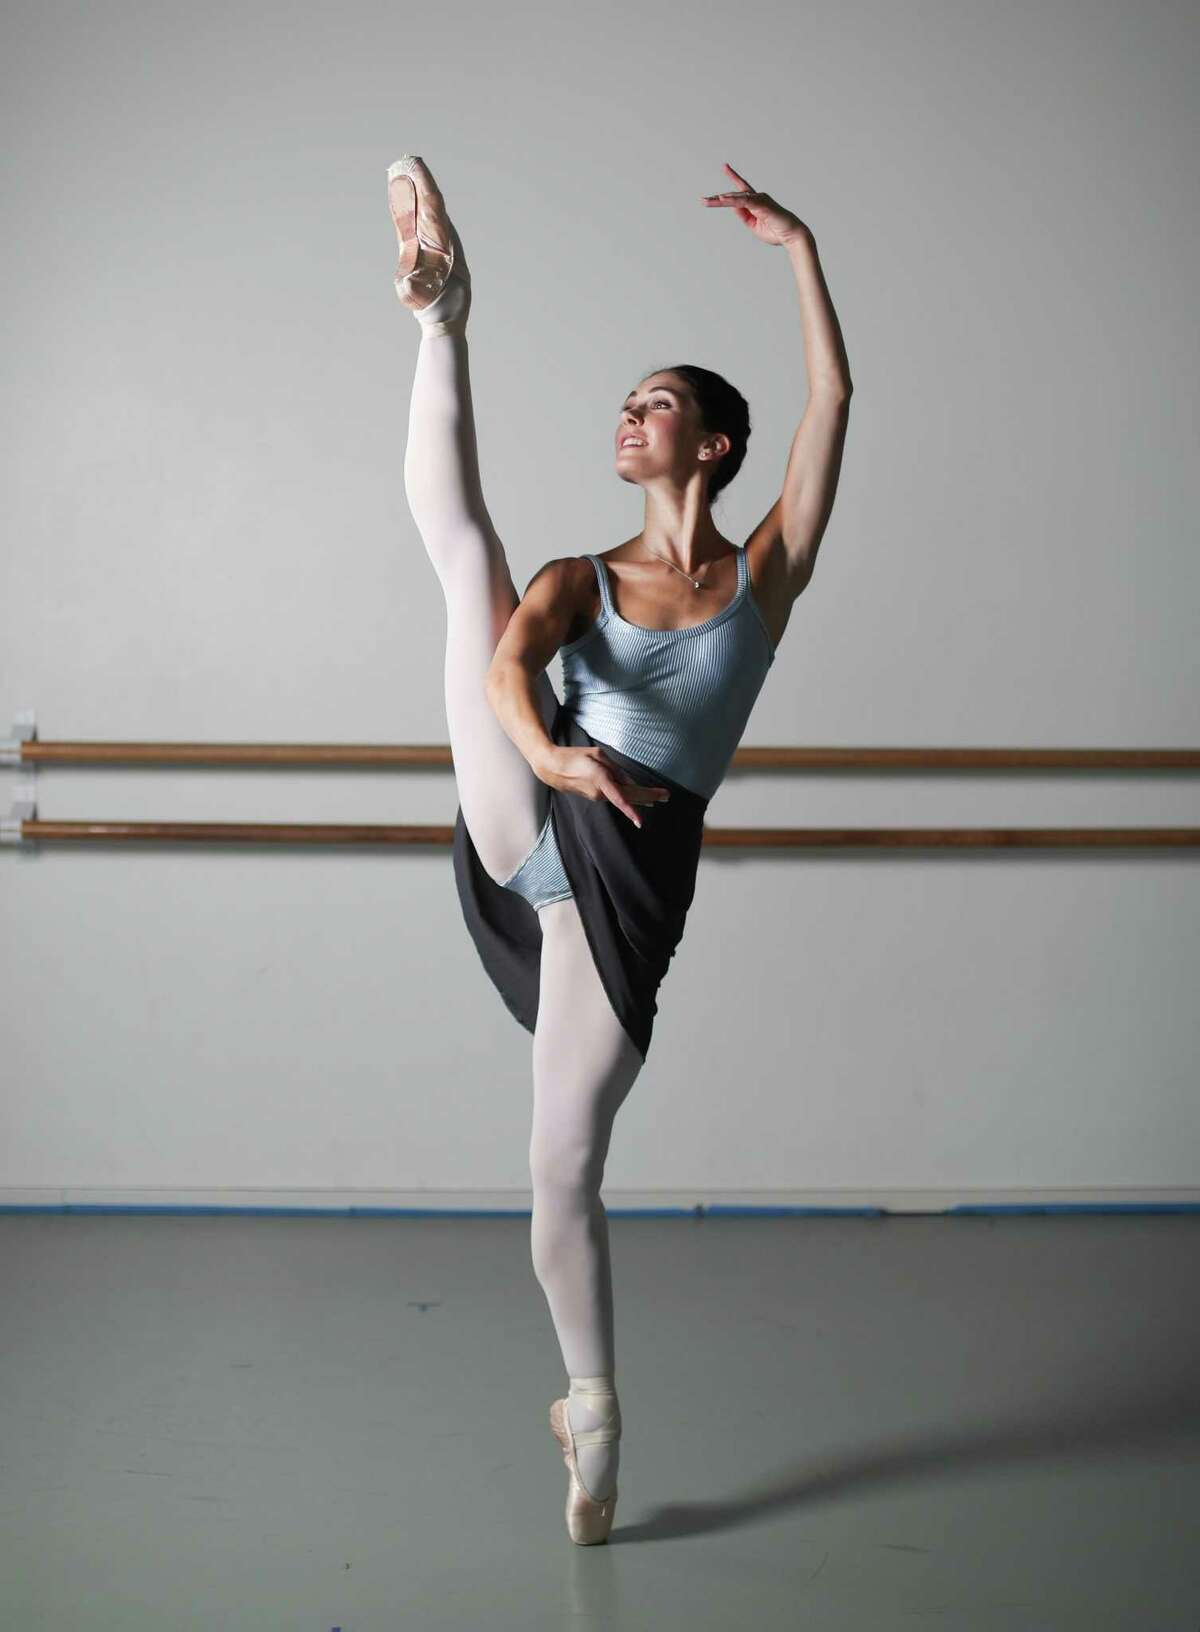 Houston Ballet dancer Beckanne Sisk